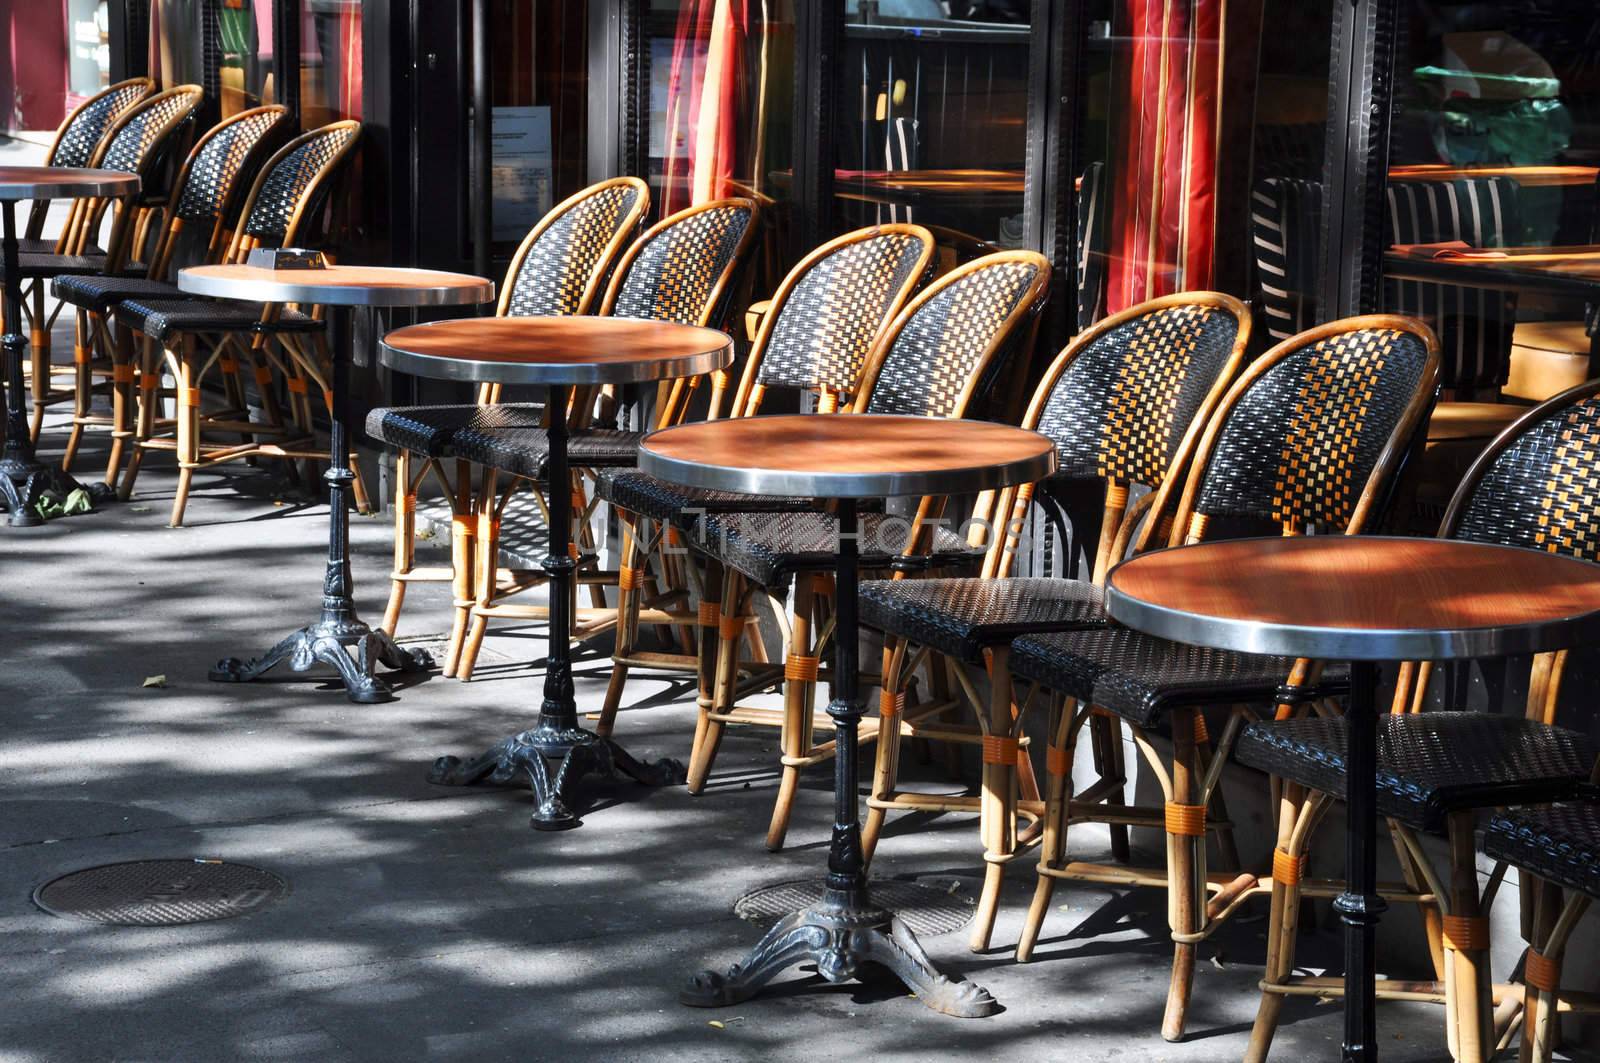 Cafe terrace in Paris by dutourdumonde